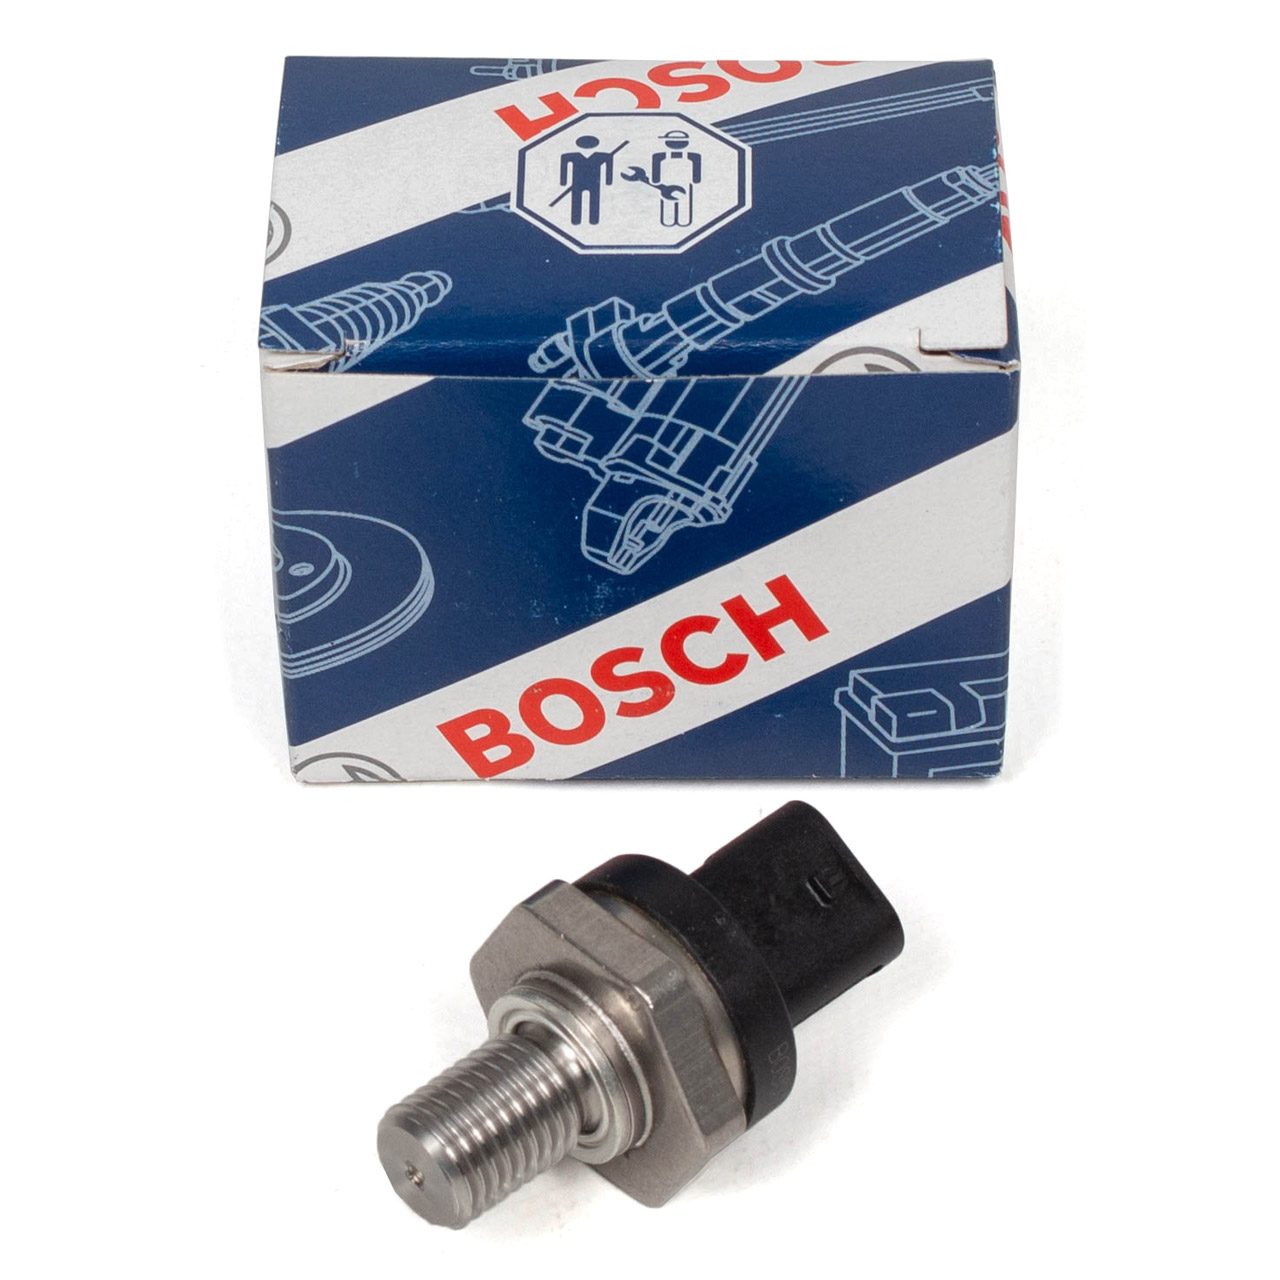 BOSCH 0261230402 Sensor Öltemperatur BMW 1er-7er F30 F31 F20 F10 F25 F15 MINI F54-F57 F60